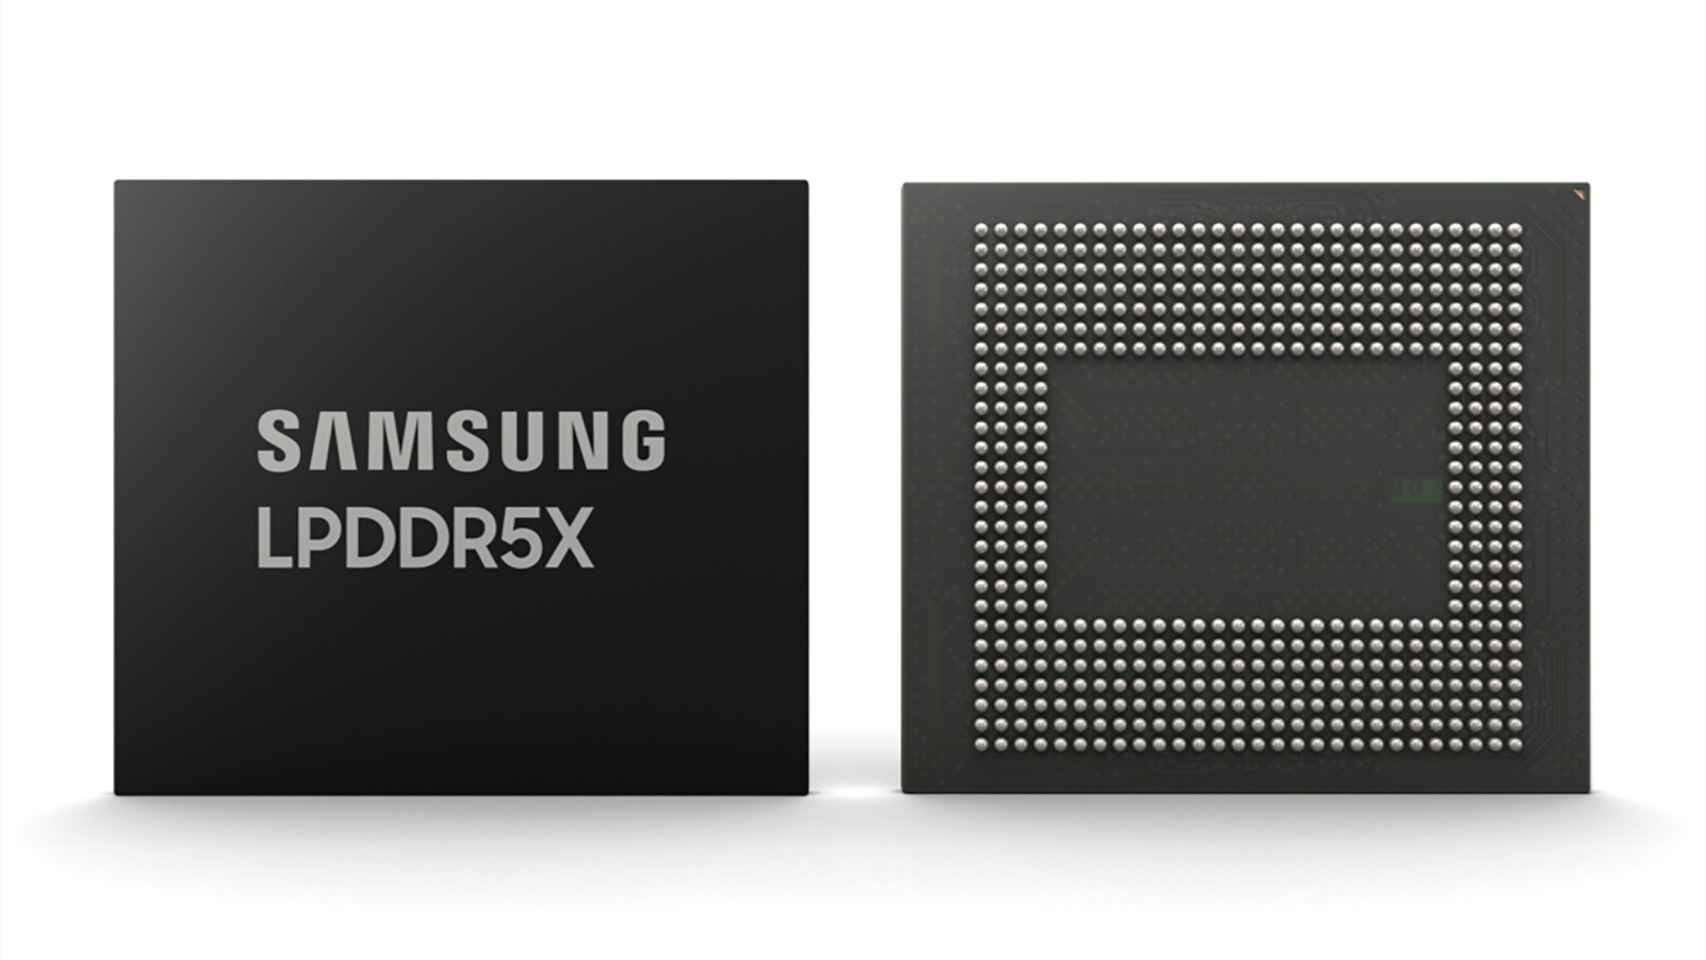 La memoria RAM LPDDR5X ya es compatible con los chips Snapdragon: Samsung y Qualcomm lo han conseguido